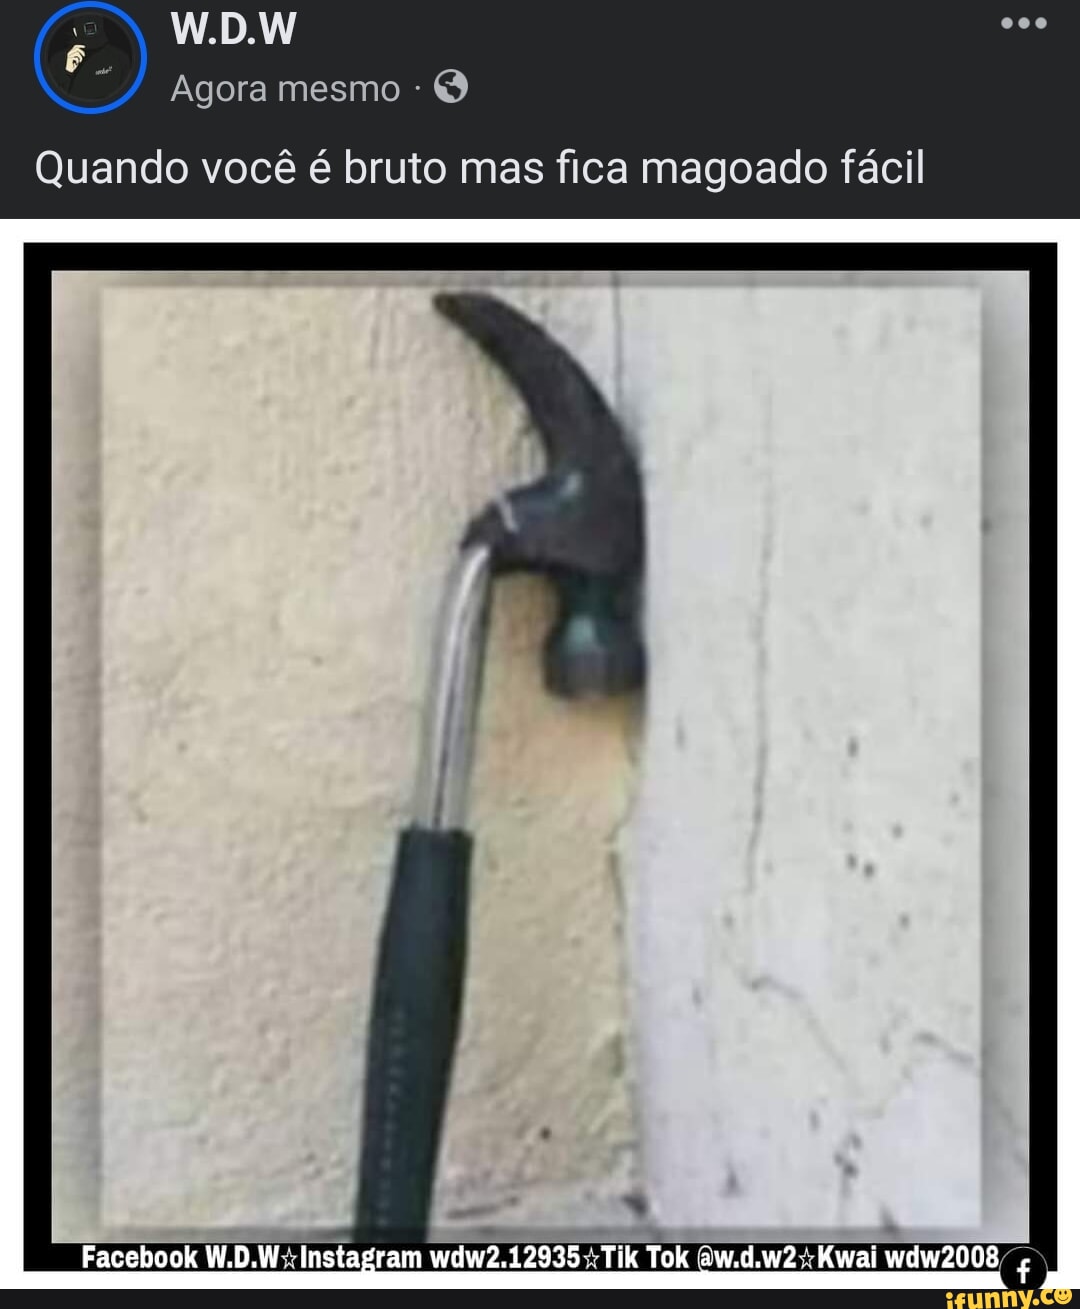 Memes de imagem bWkbZZZF8 por Vash_o_estouro_da_boiada: 3 comentários -  iFunny Brazil